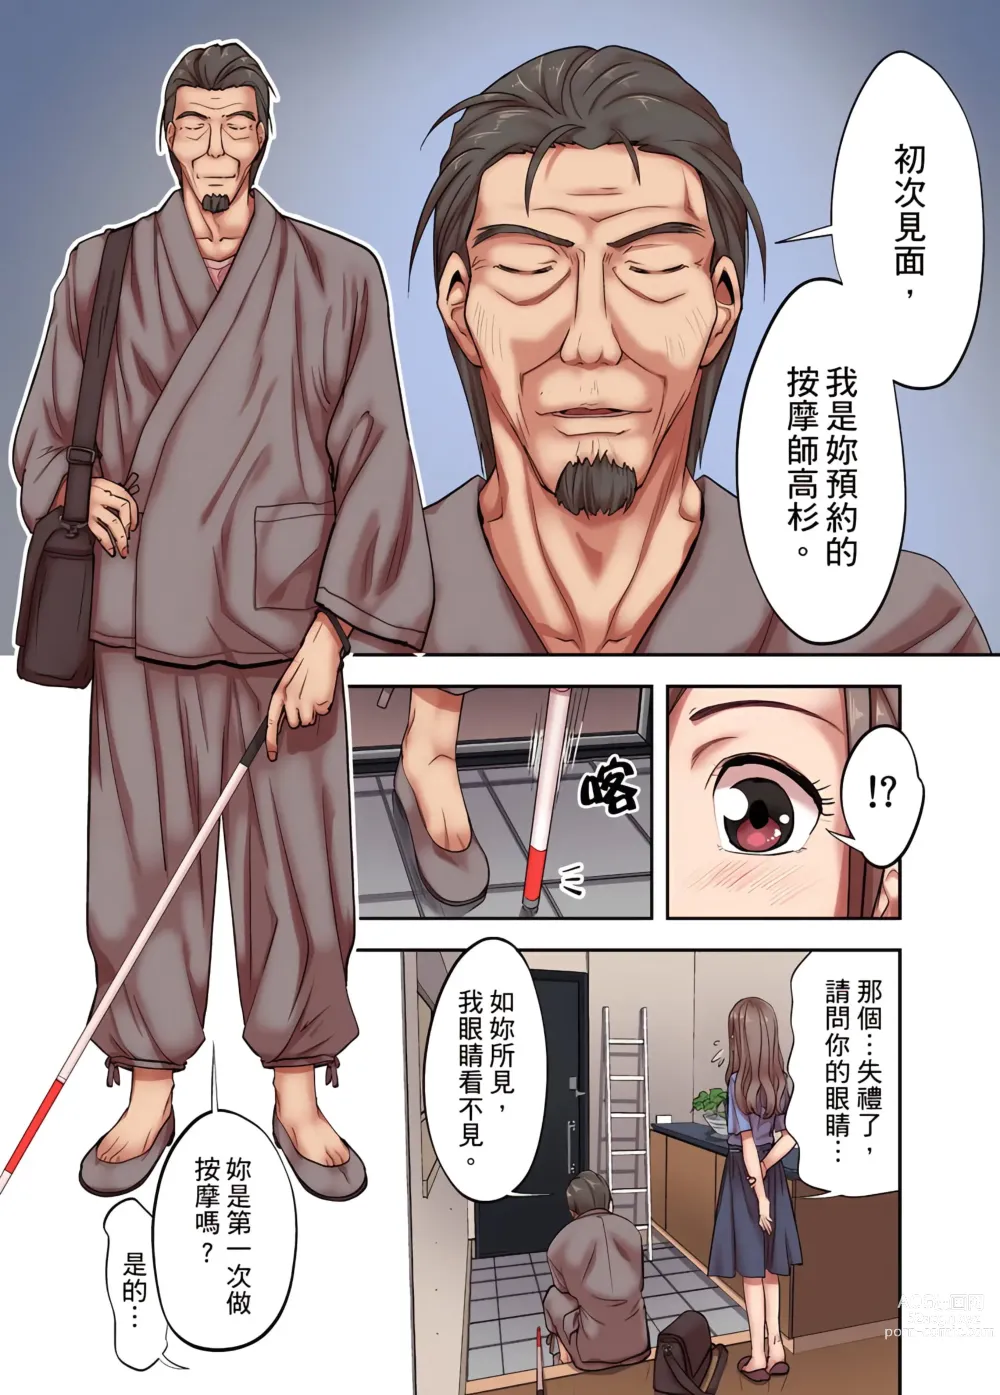 Page 7 of manga 人妻專攻！超猛按摩師的敏感穴位按摩術～不要連裡面的穴道一起刺激啦！1-34話